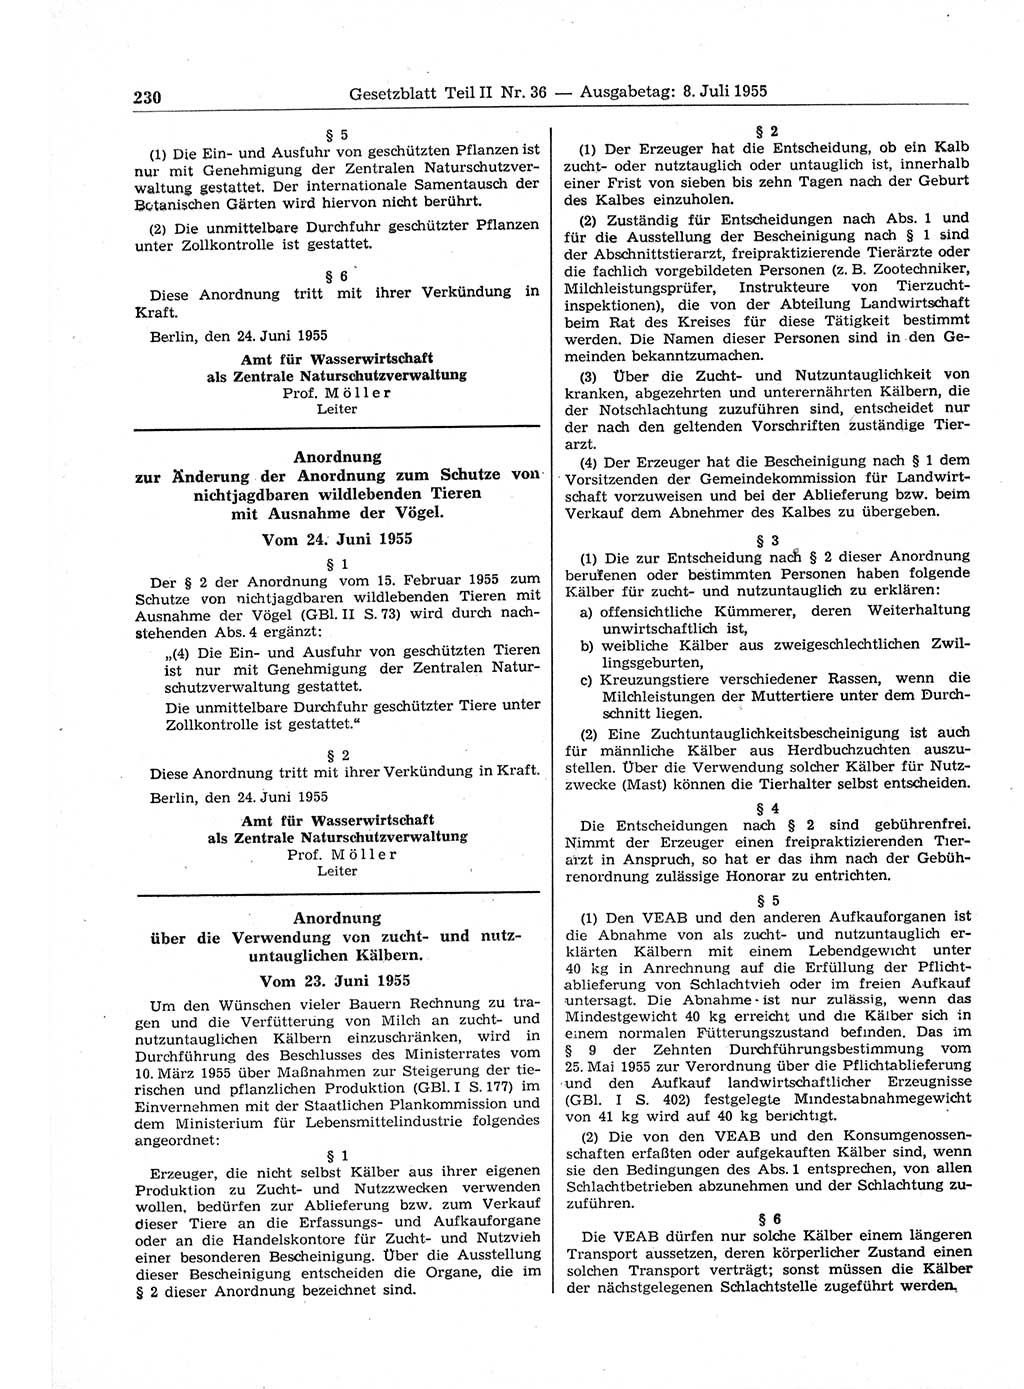 Gesetzblatt (GBl.) der Deutschen Demokratischen Republik (DDR) Teil ⅠⅠ 1955, Seite 230 (GBl. DDR ⅠⅠ 1955, S. 230)